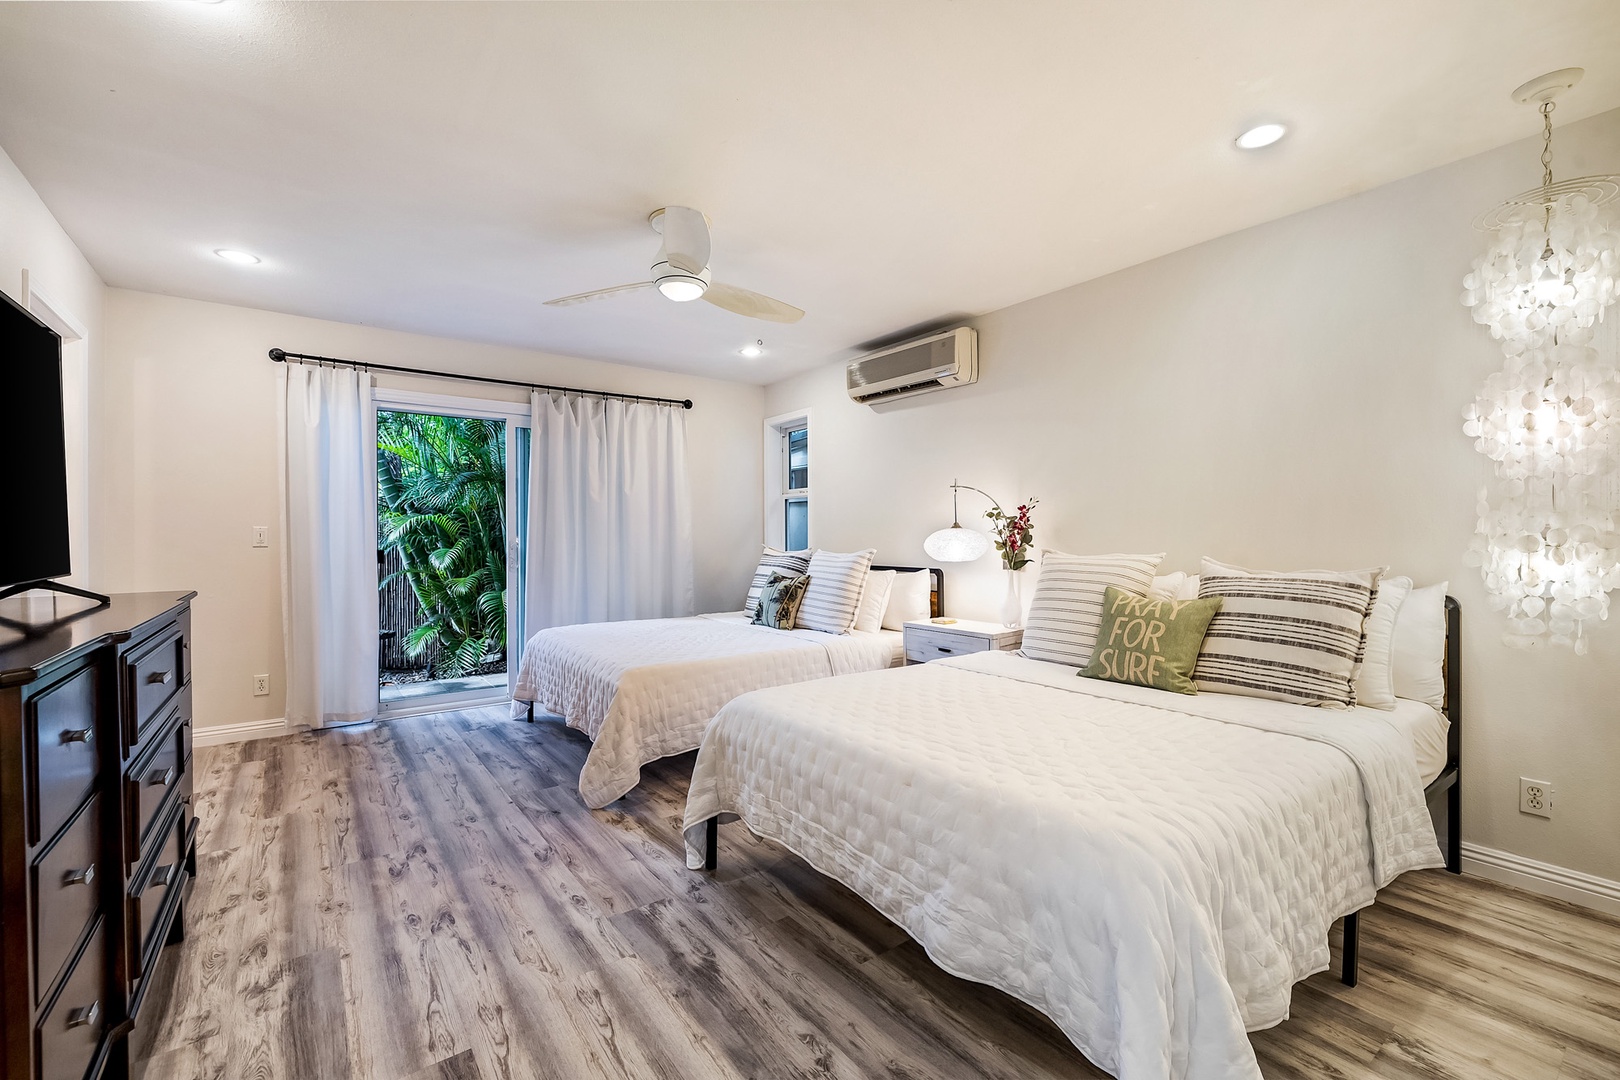 Honolulu Vacation Rentals, Hale Ho'omaha - Guest Bedroom 2 has 2 queen beds